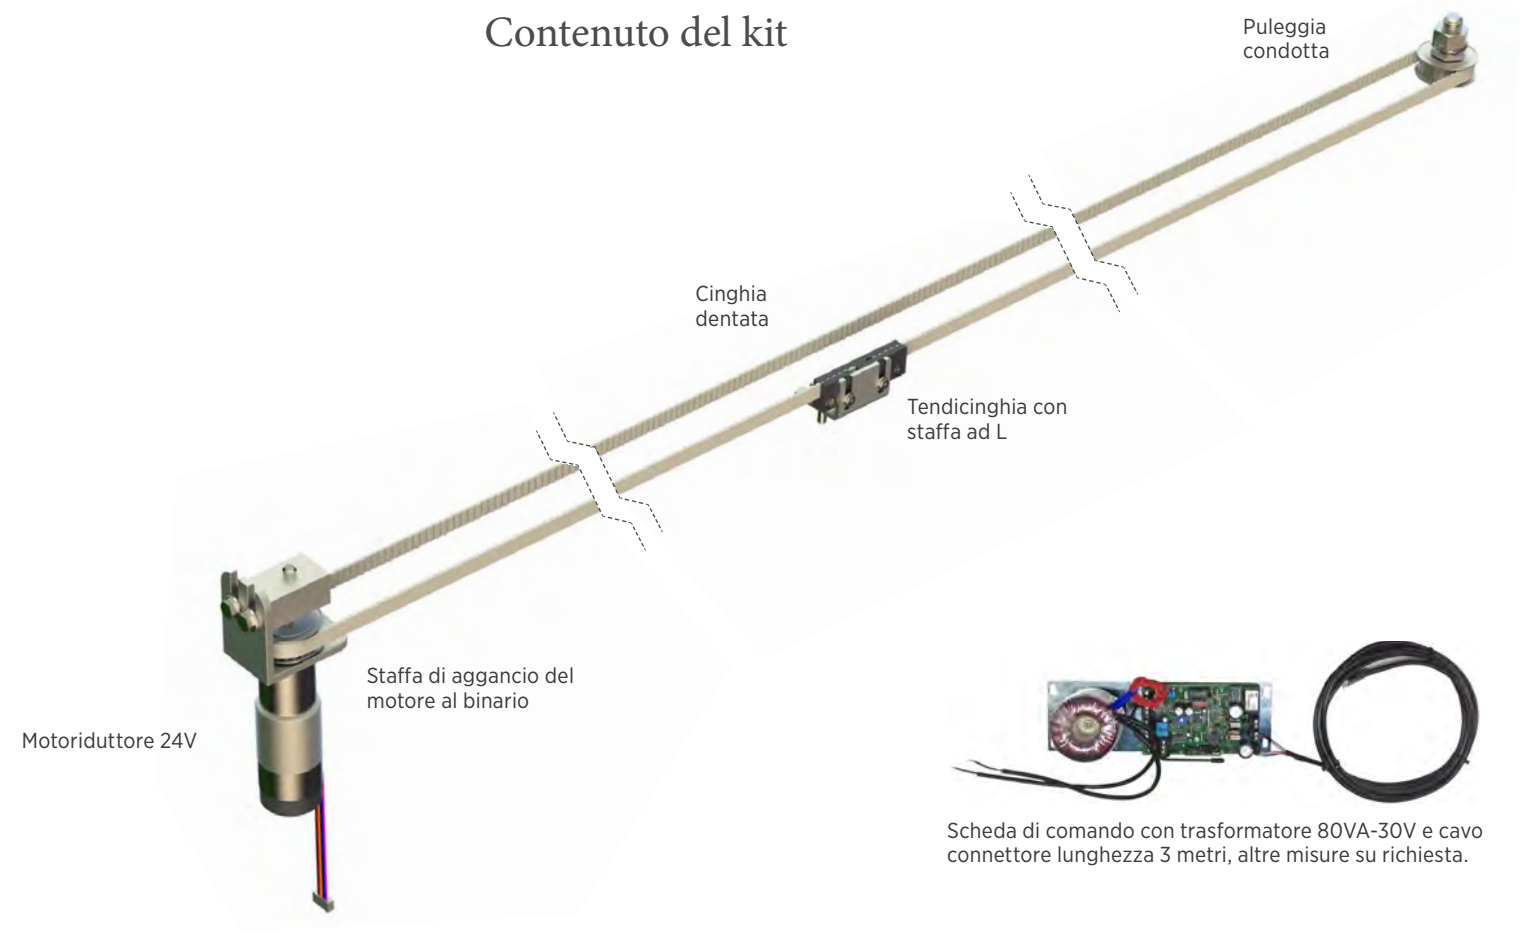 ANTAMATIC SIR - Kit Motore BOSTON radiocontrollato per anta scorrevole kit per scuro mono anta destra o sinistra - luce min - max 400 - peso max kg 100 - per anta DX - SX